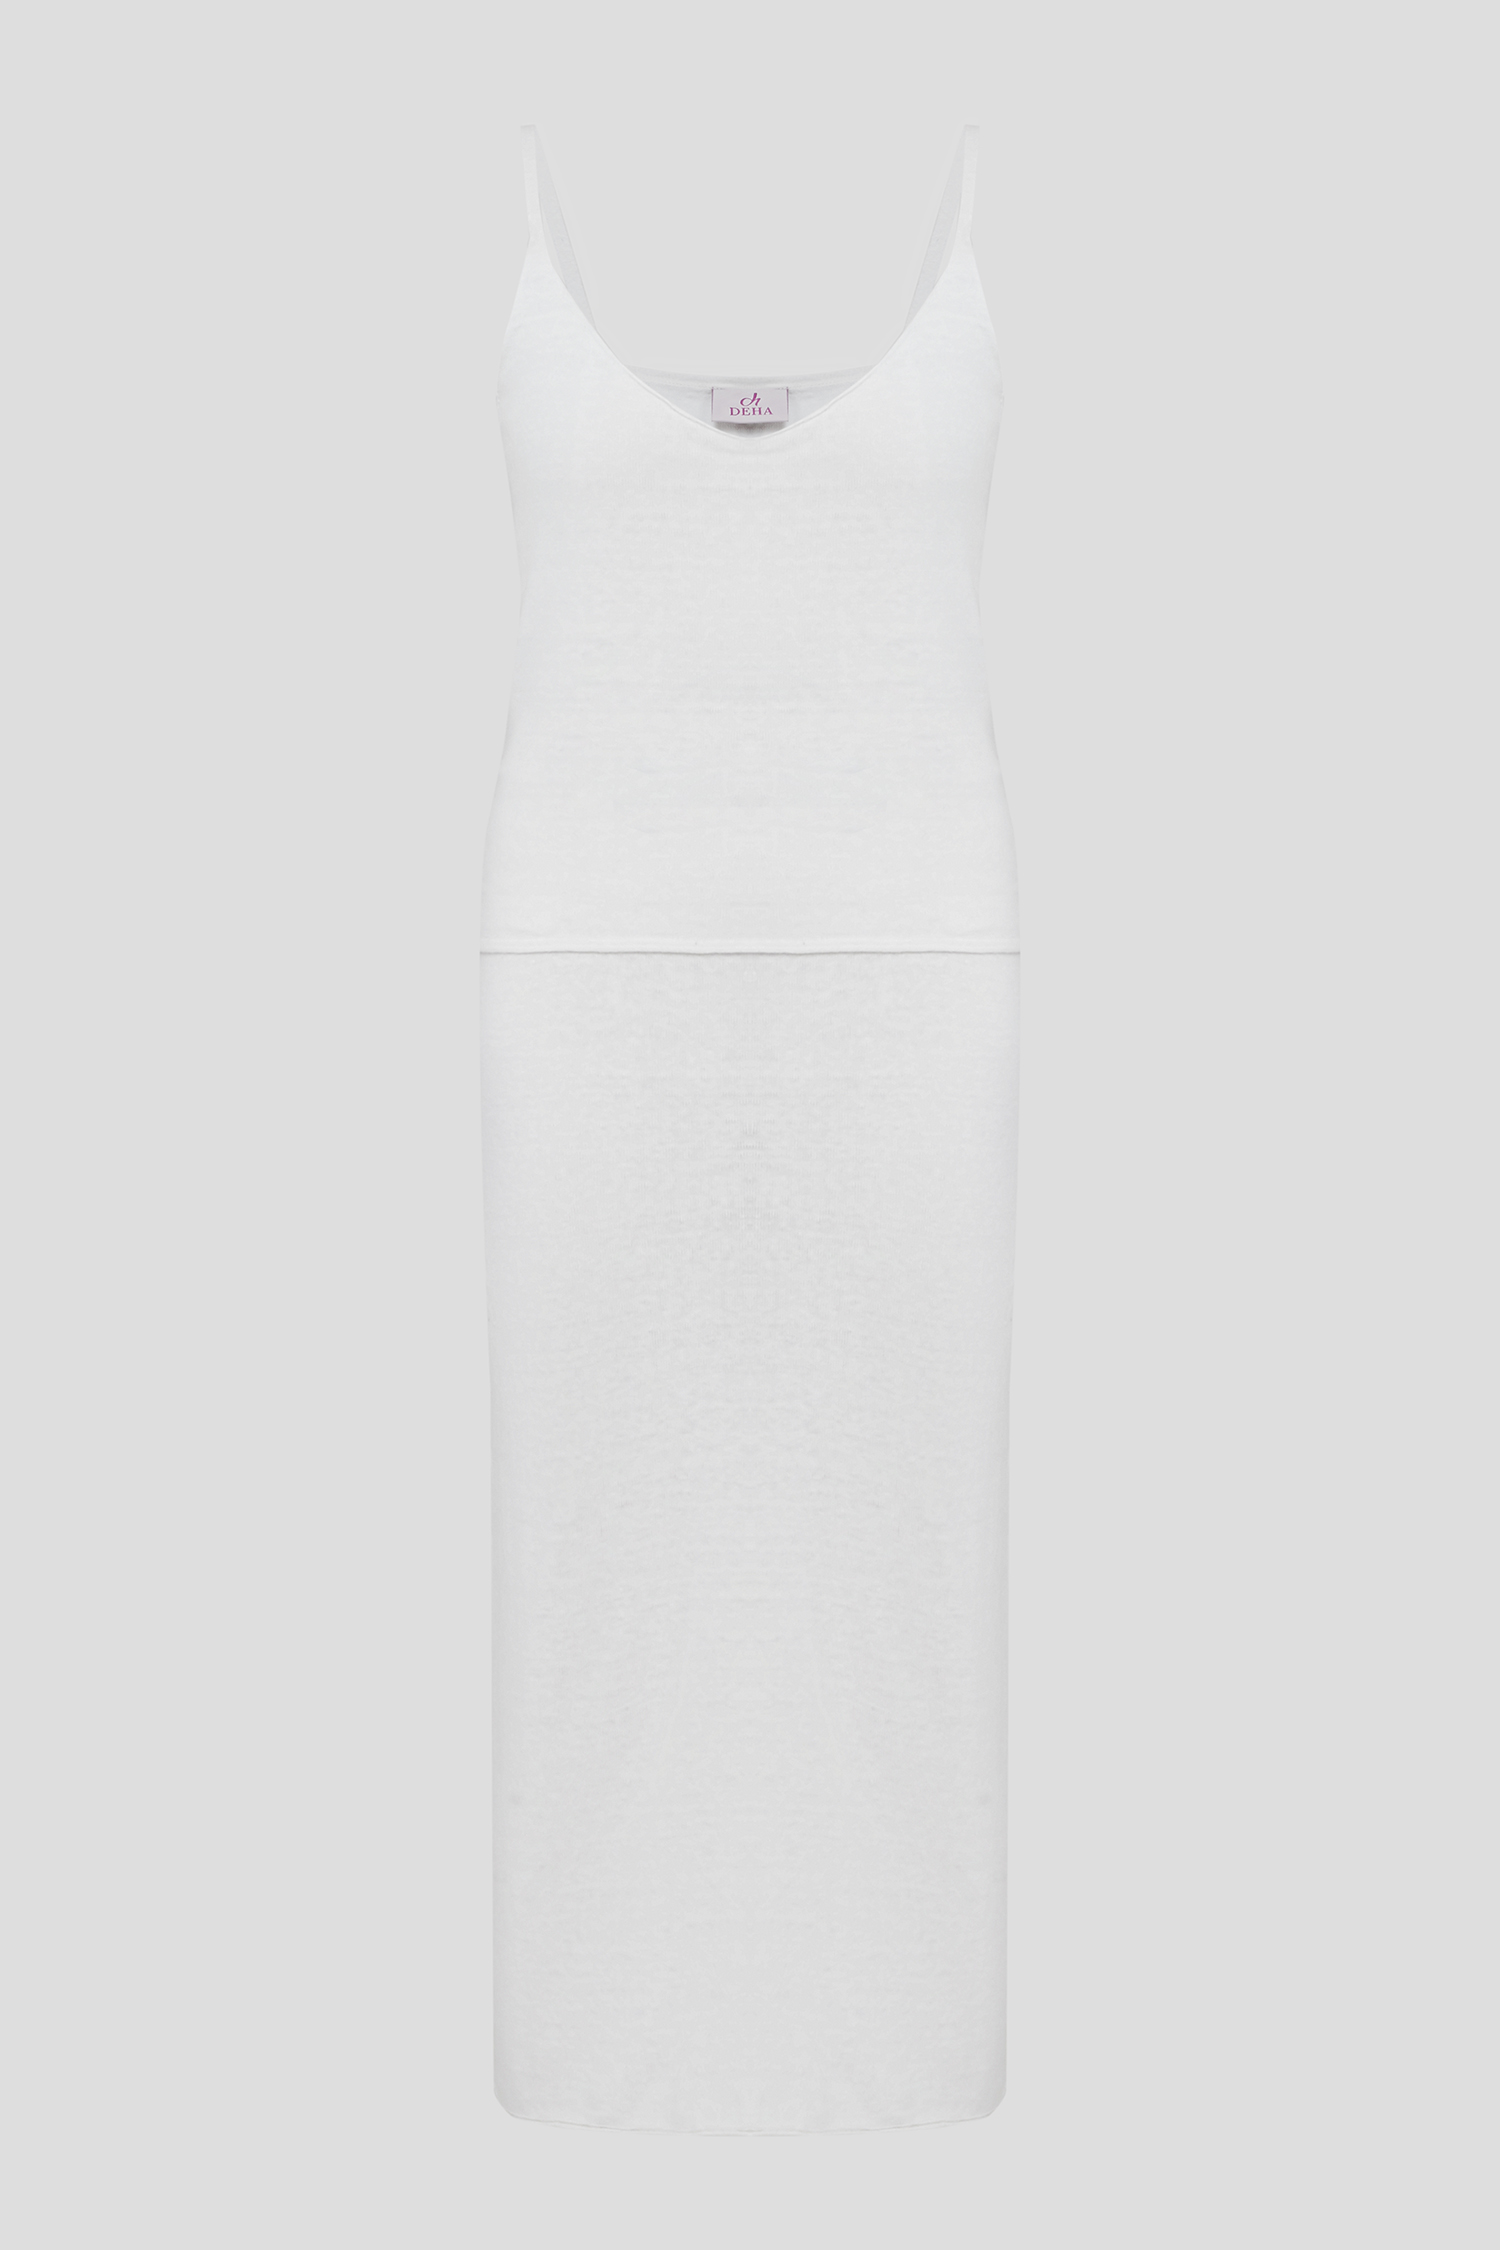 Женский белый льняной комплект одежды (топ, юбка) 1